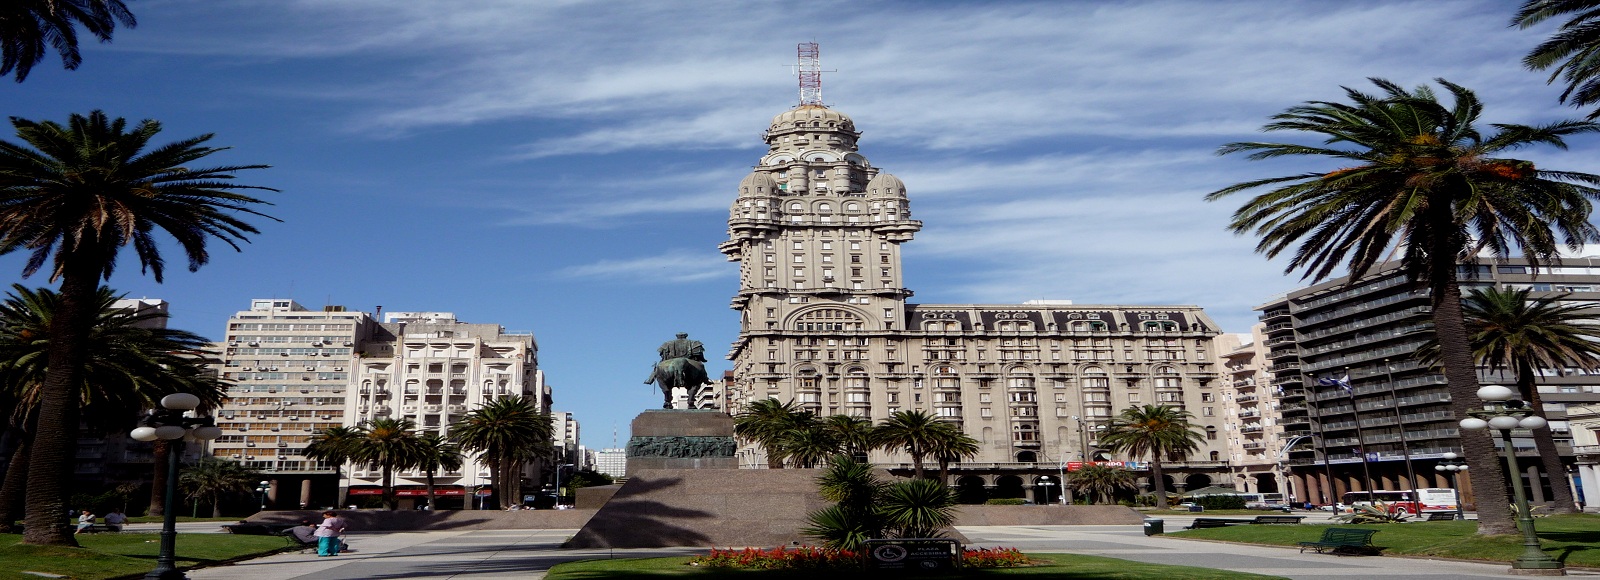 Ofertas de Traslados en Montevideo. Traslados económicos en Montevideo 